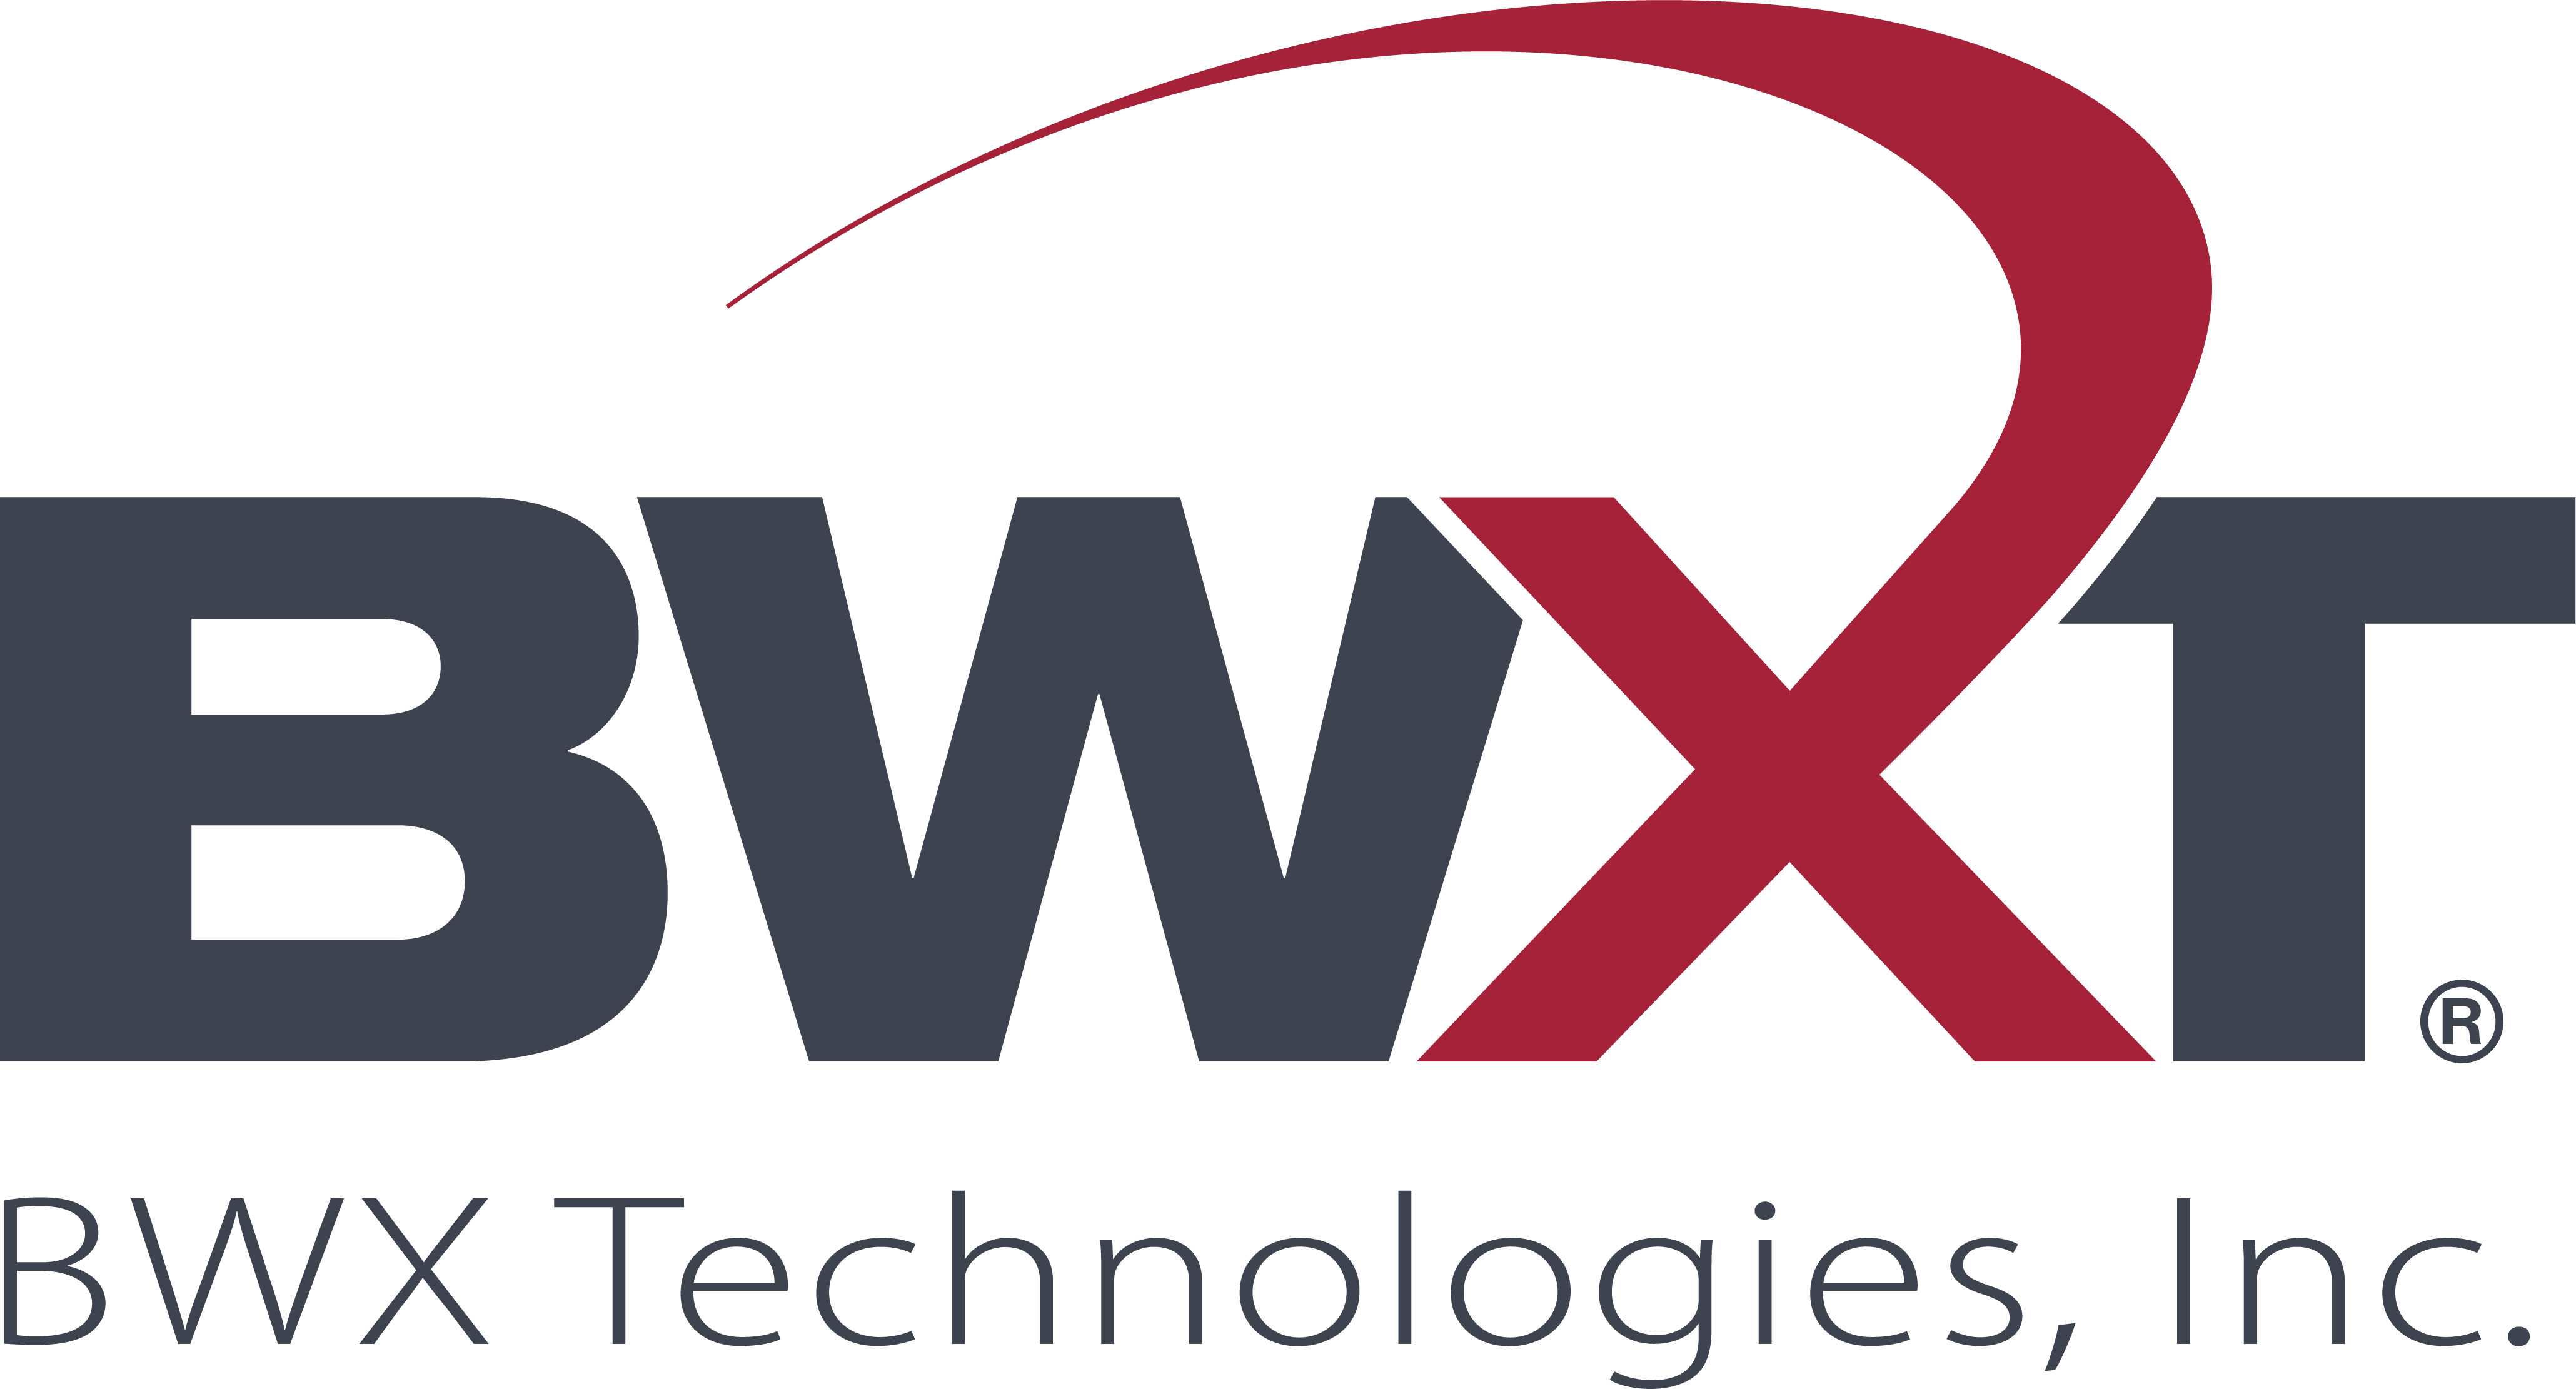 BWXT_logo_®_CMYK